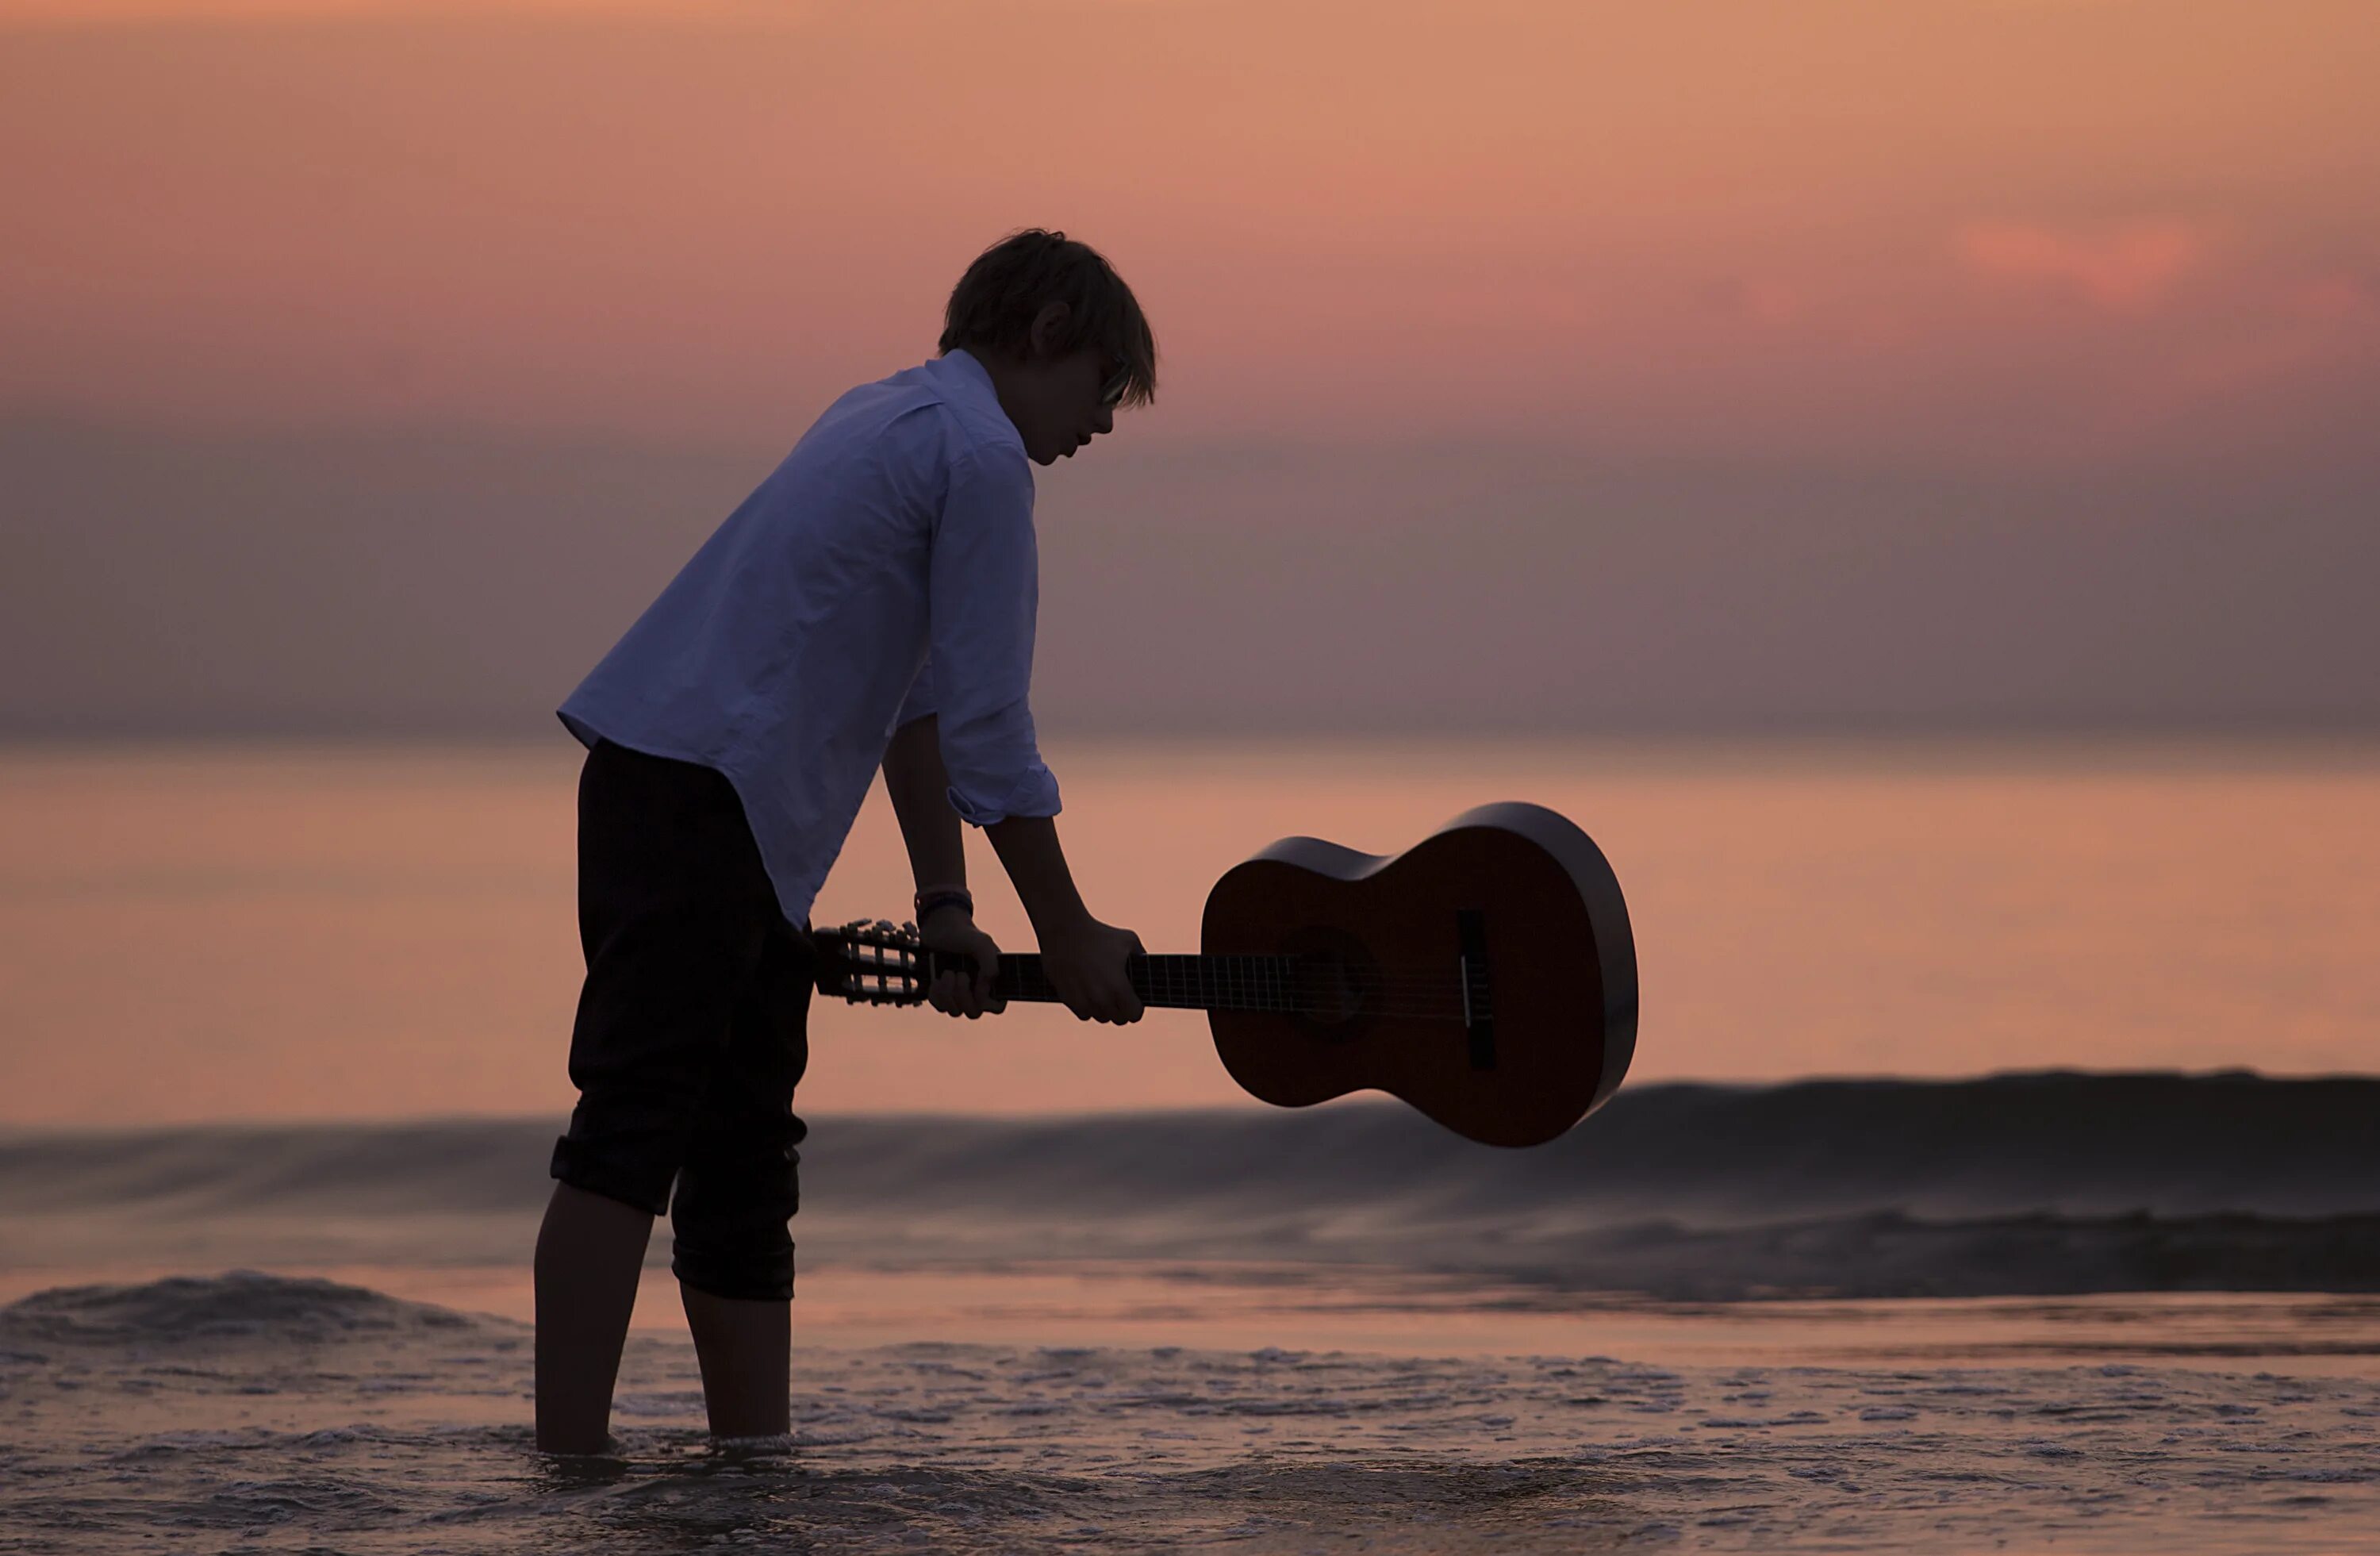 Свободен мальчик. Парень с гитарой у моря. Гитара на берегу моря. Гитарист у моря. Закат на море люди с гитарой.